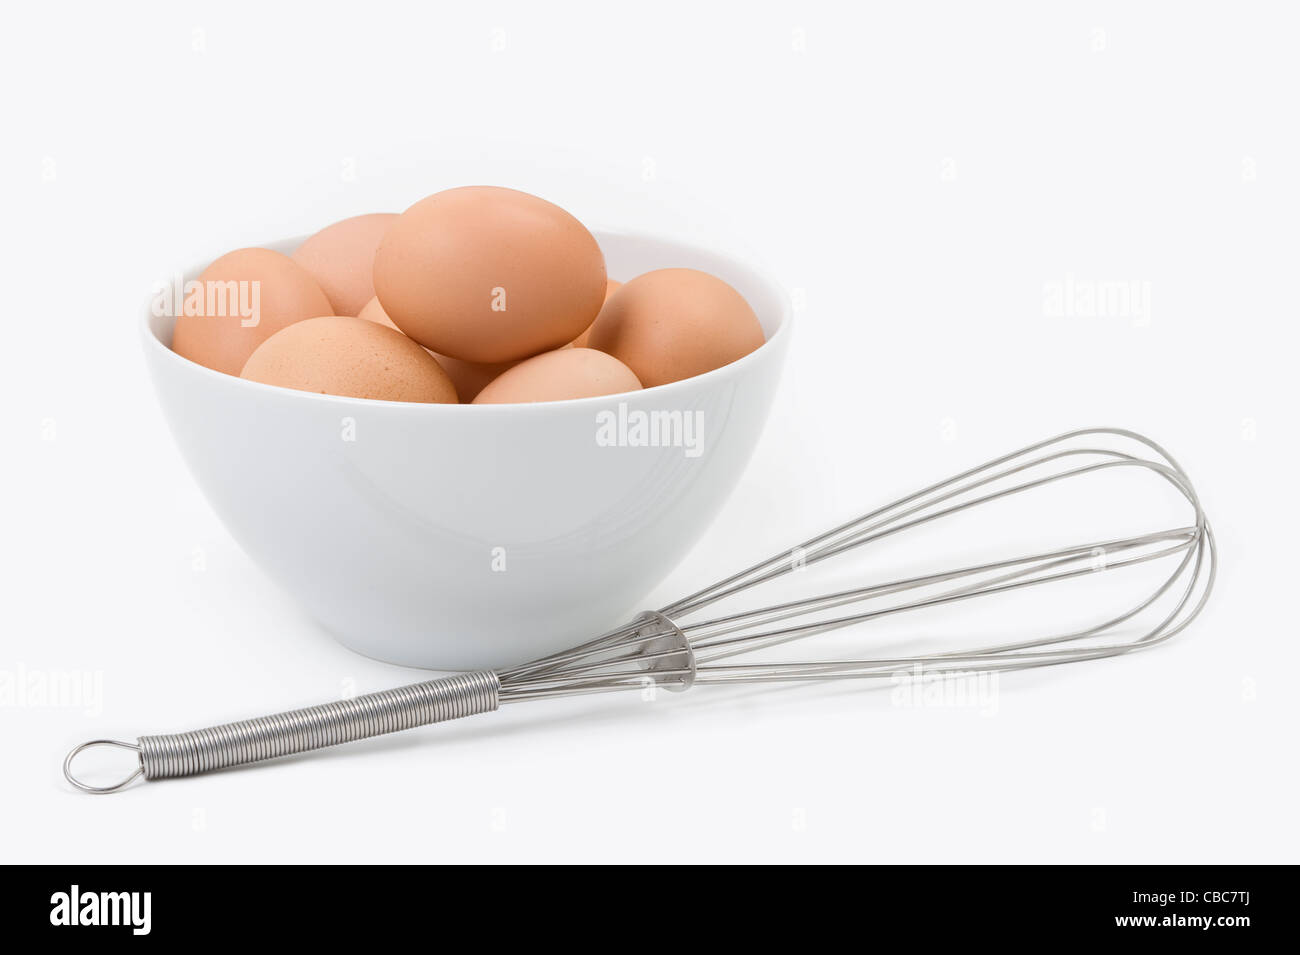 Los huevos de gallinas marrón blanco en un recipiente con un batidor de acero inoxidable sobre un fondo blanco. Foto de stock